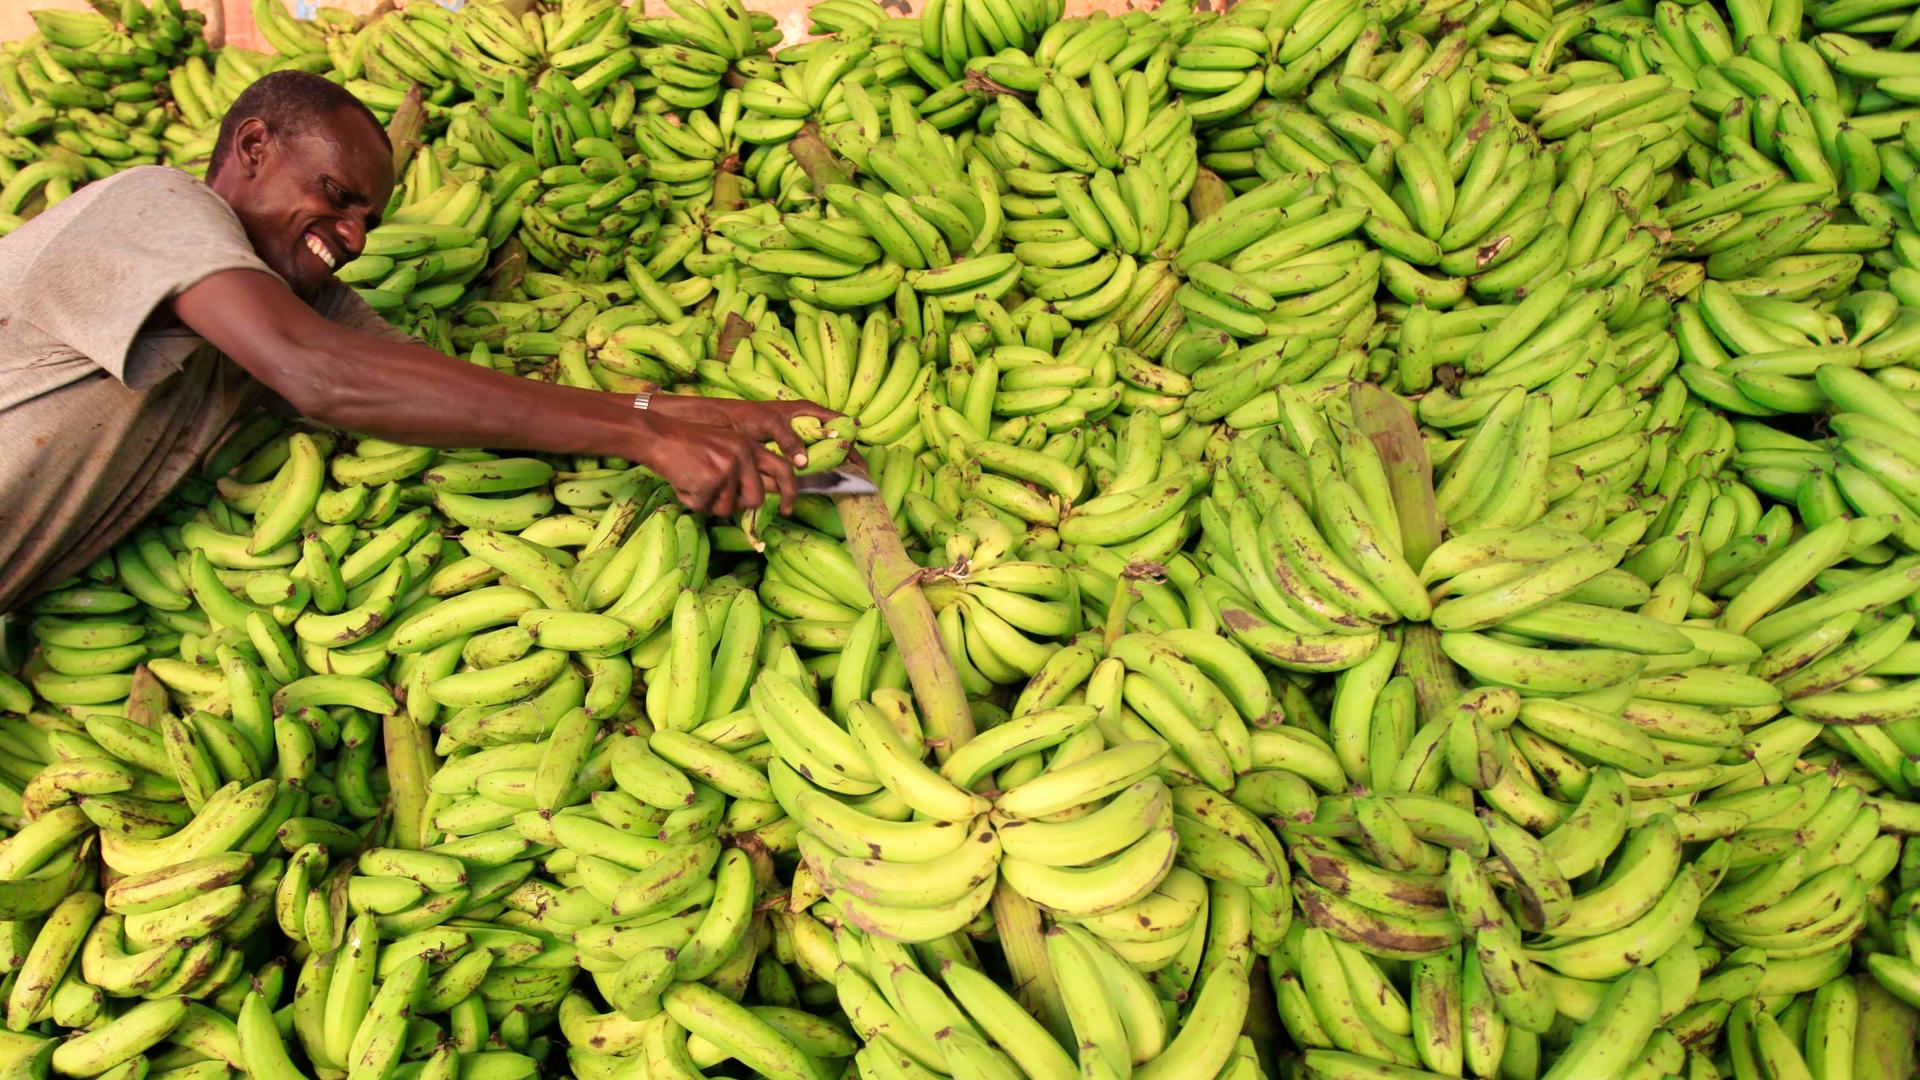 A vendor displays bananas at his stall in Somalia capital Mogadishu, July 8 2013.